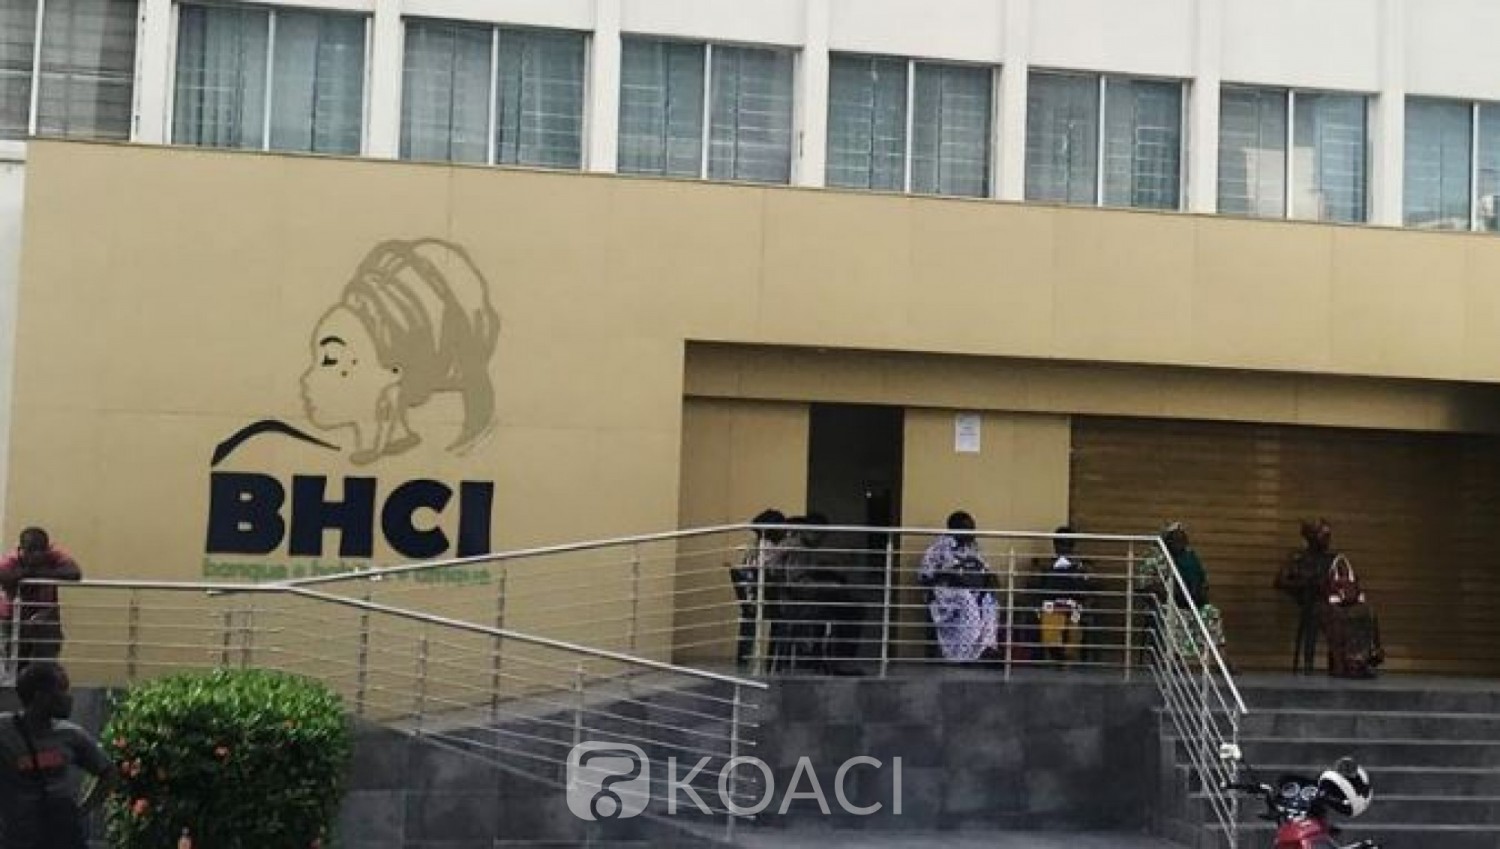 Côte d'Ivoire: Affaire BHCI, Westbridge assigne l'Etat ivoirien devant le centre de règlement des différends de la Banque mondiale